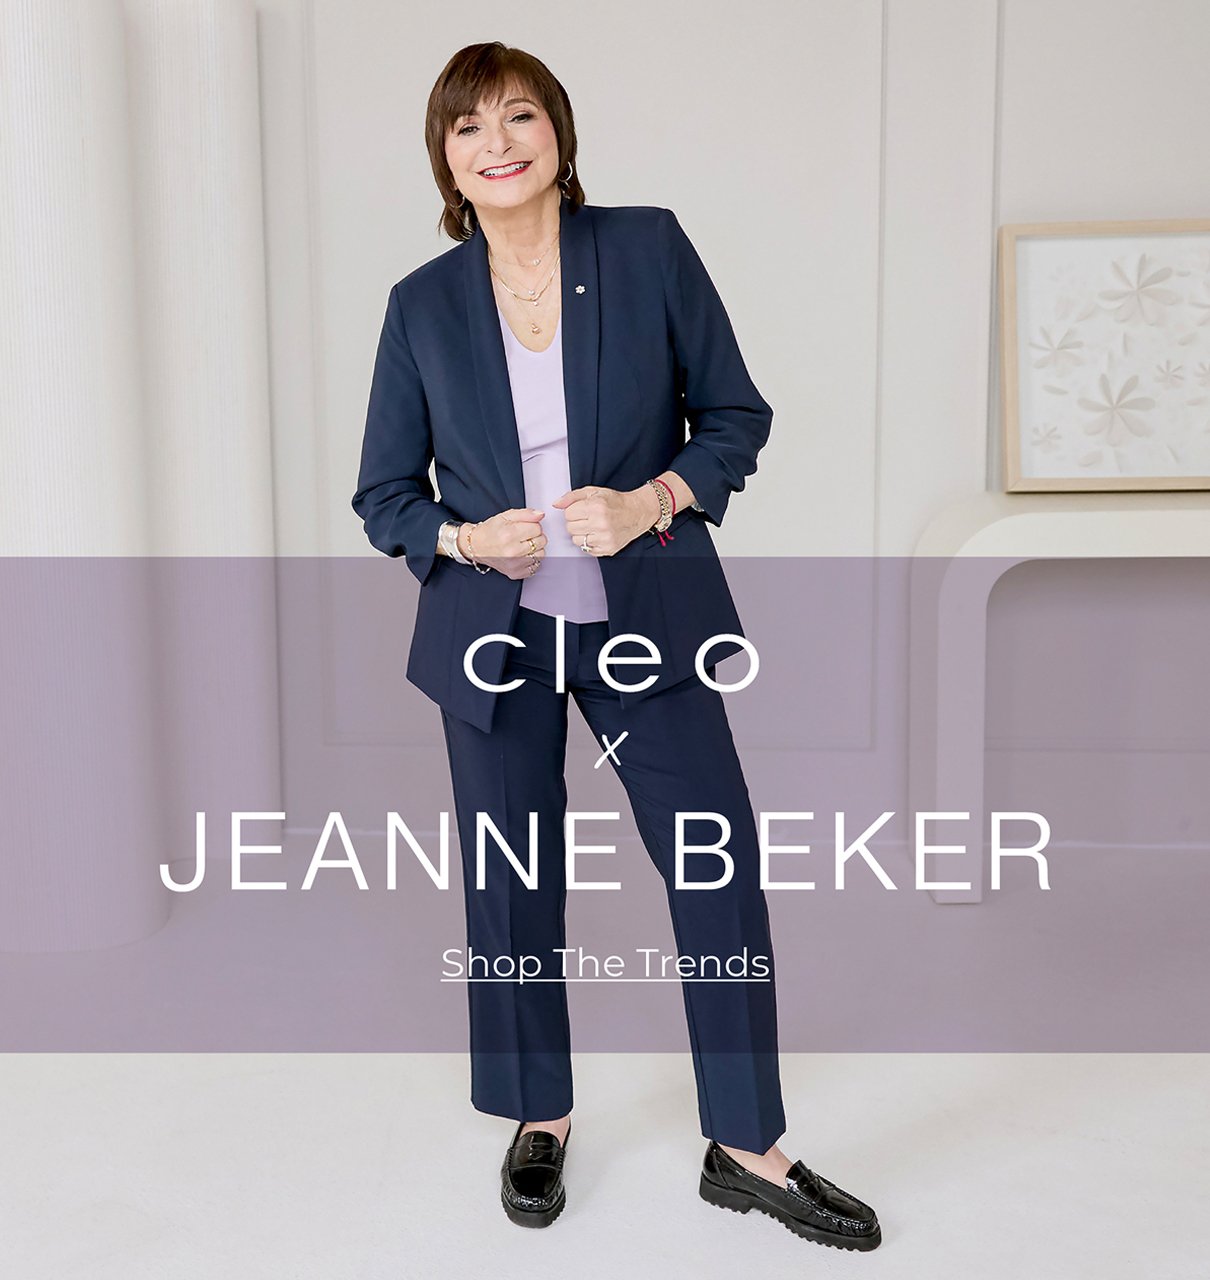 Cleo x Jeanne Beker